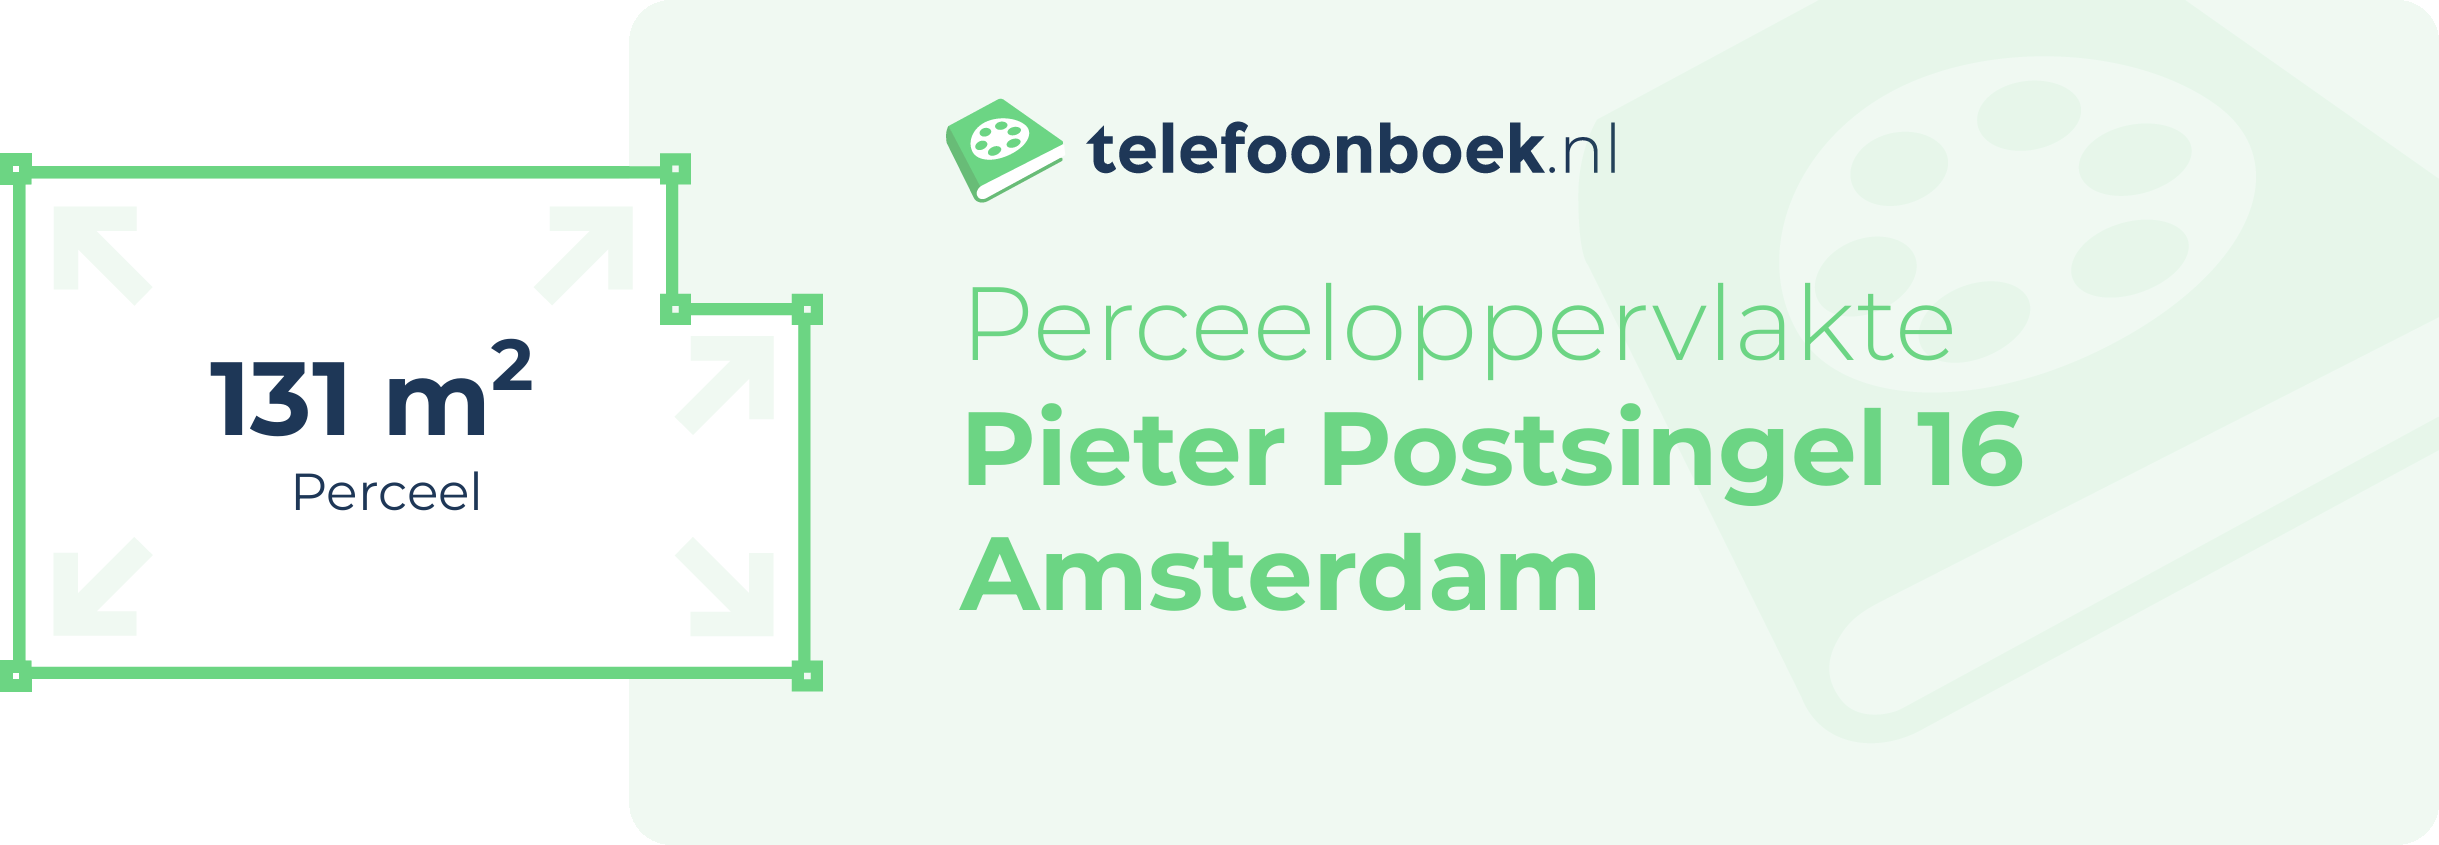 Perceeloppervlakte Pieter Postsingel 16 Amsterdam